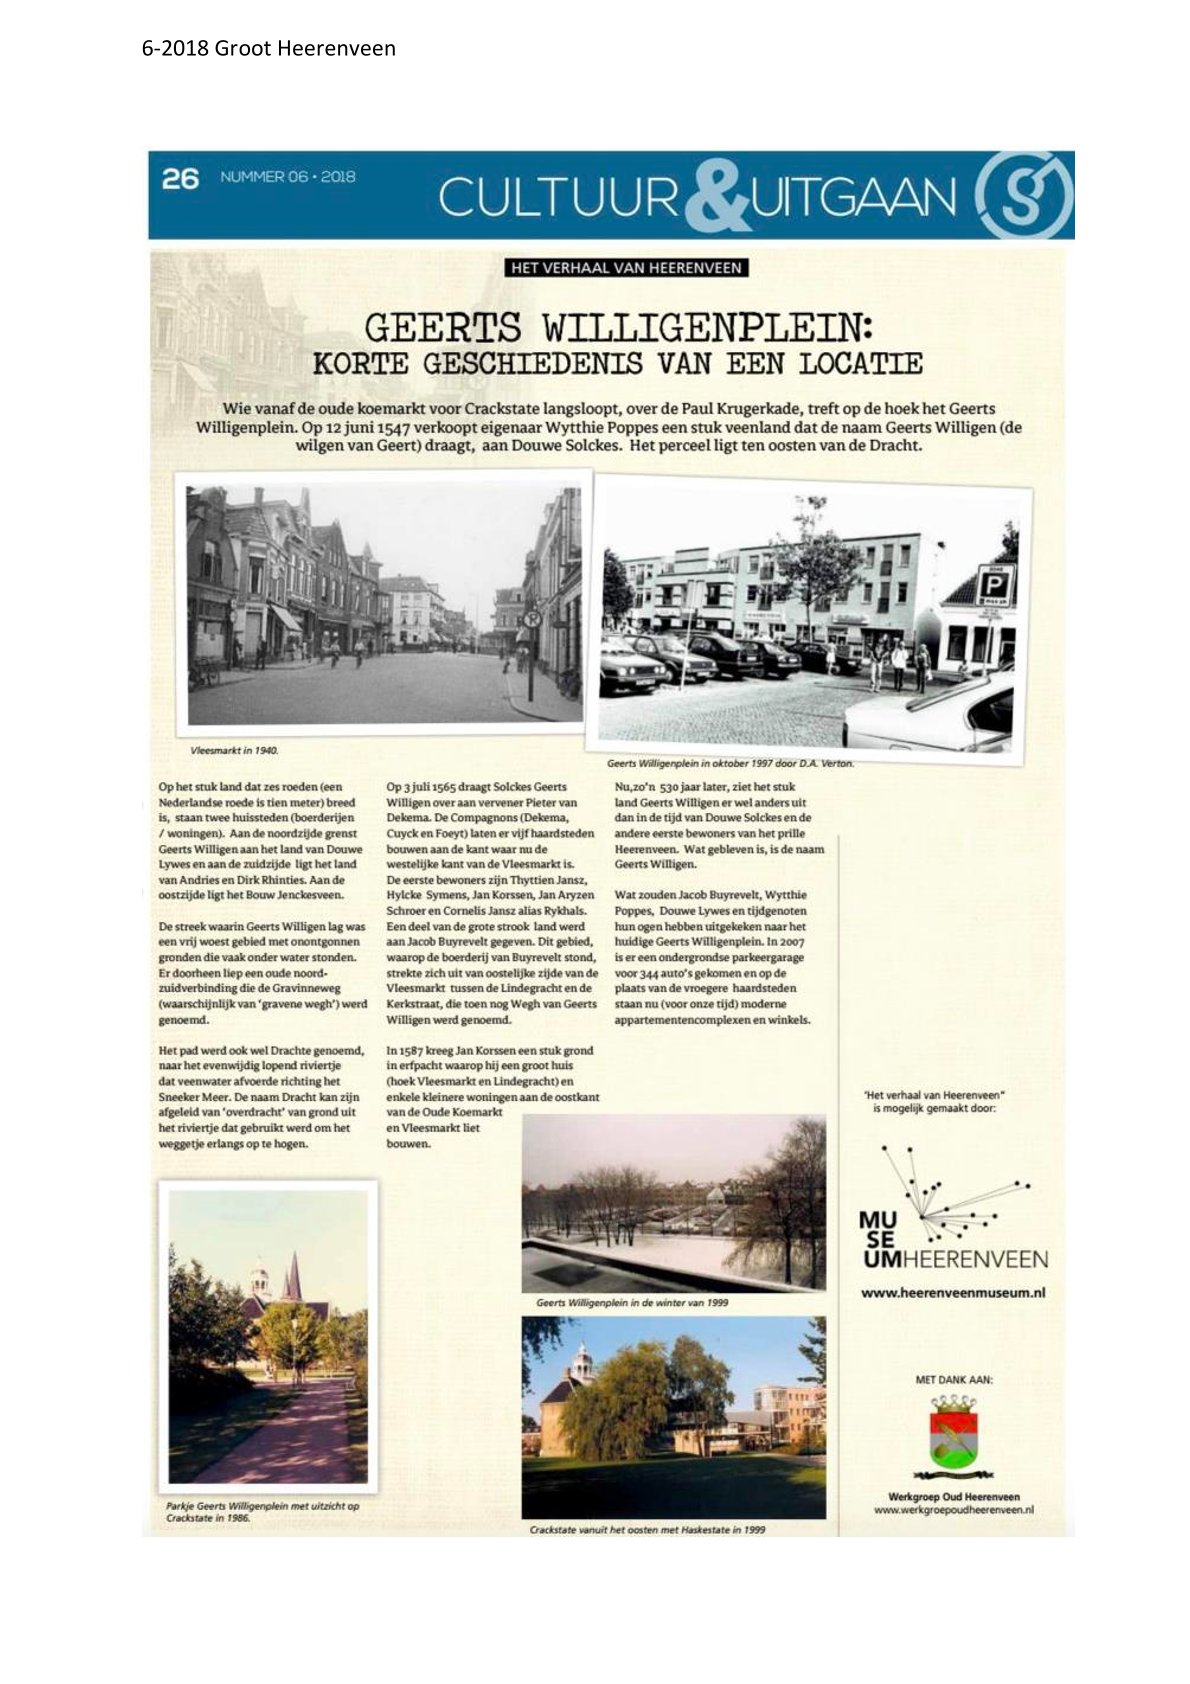 Geerts Willigenplein Korte geschiedenis van een lokatie